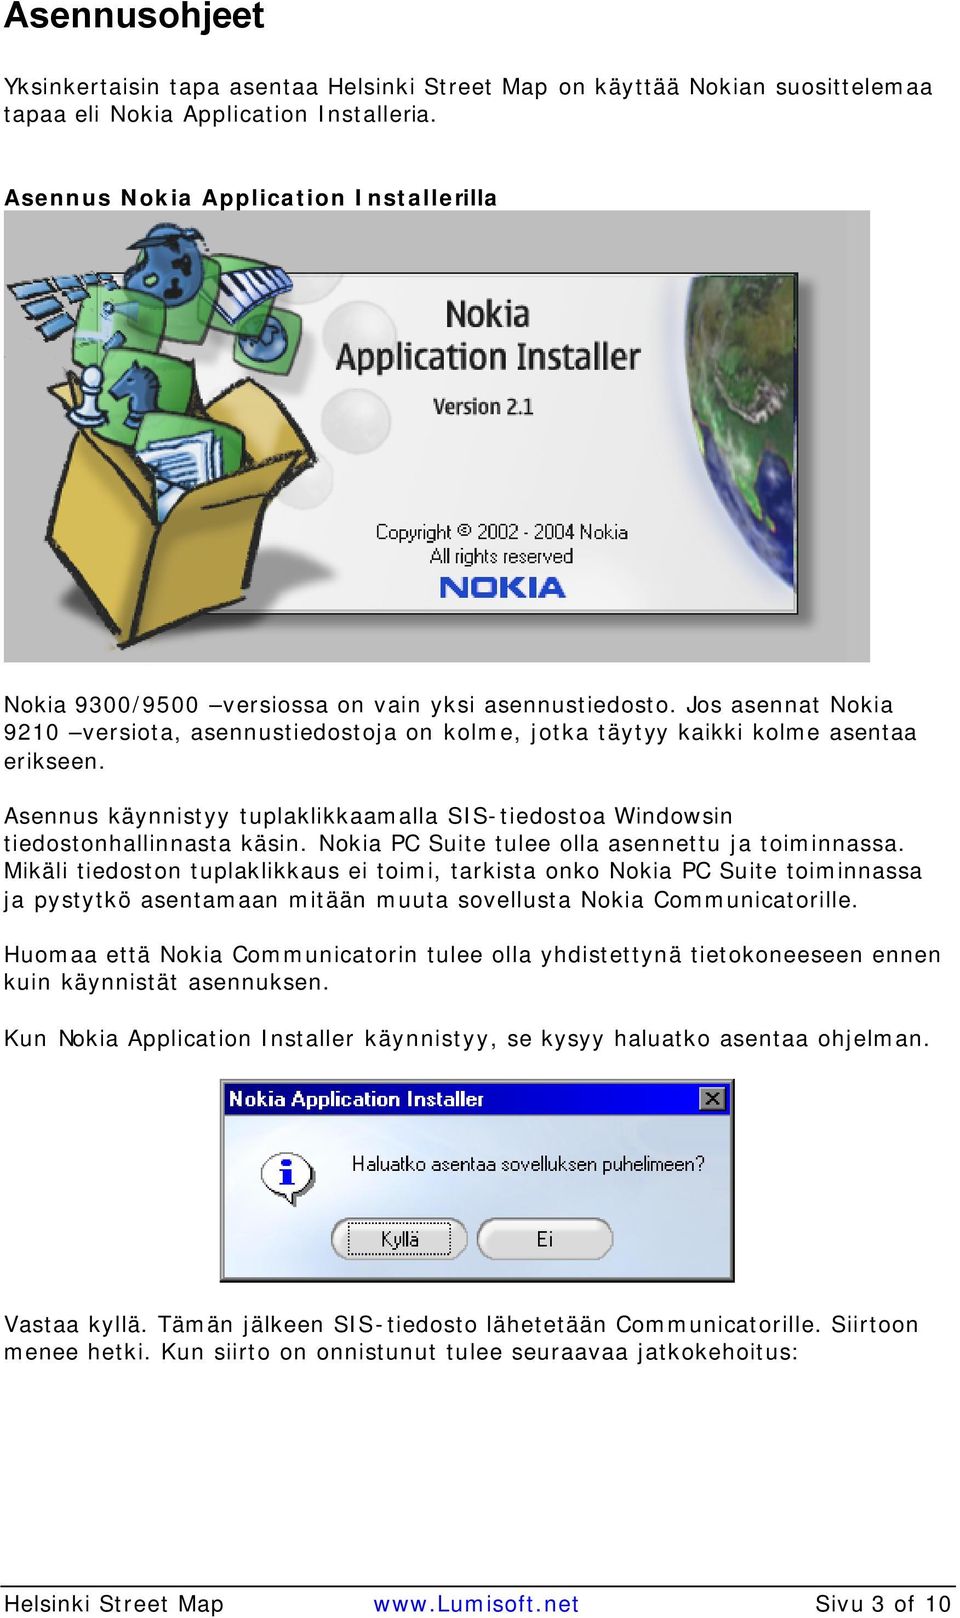 Asennus käynnistyy tuplaklikkaamalla SIS-tiedostoa Windowsin tiedostonhallinnasta käsin. Nokia PC Suite tulee olla asennettu ja toiminnassa.